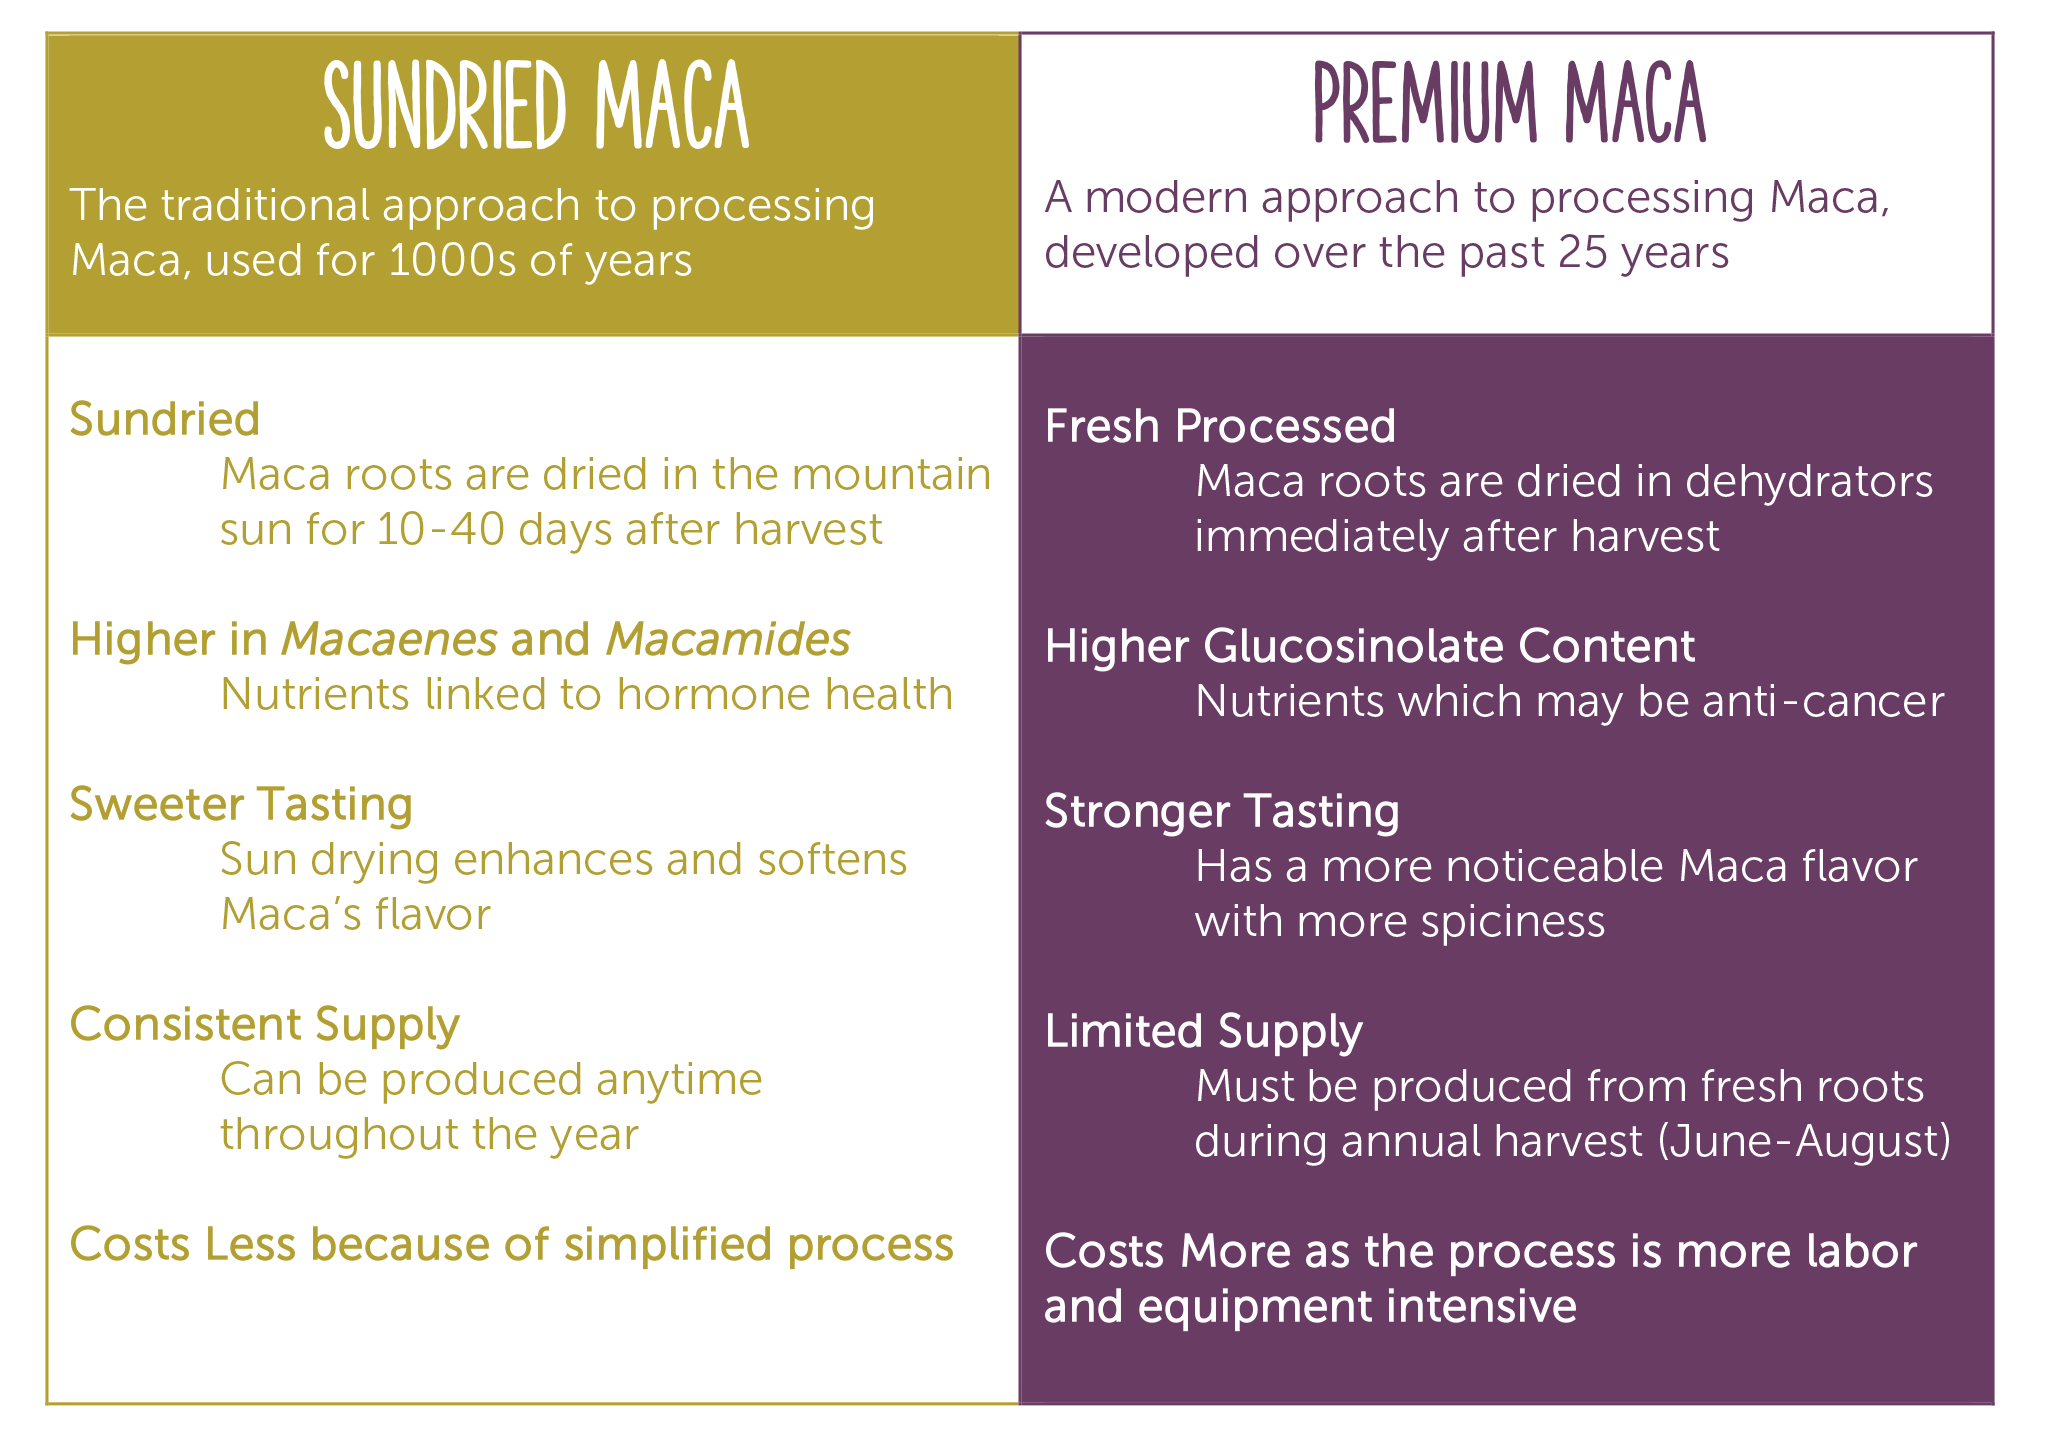 Raw vs. premium maca attributes